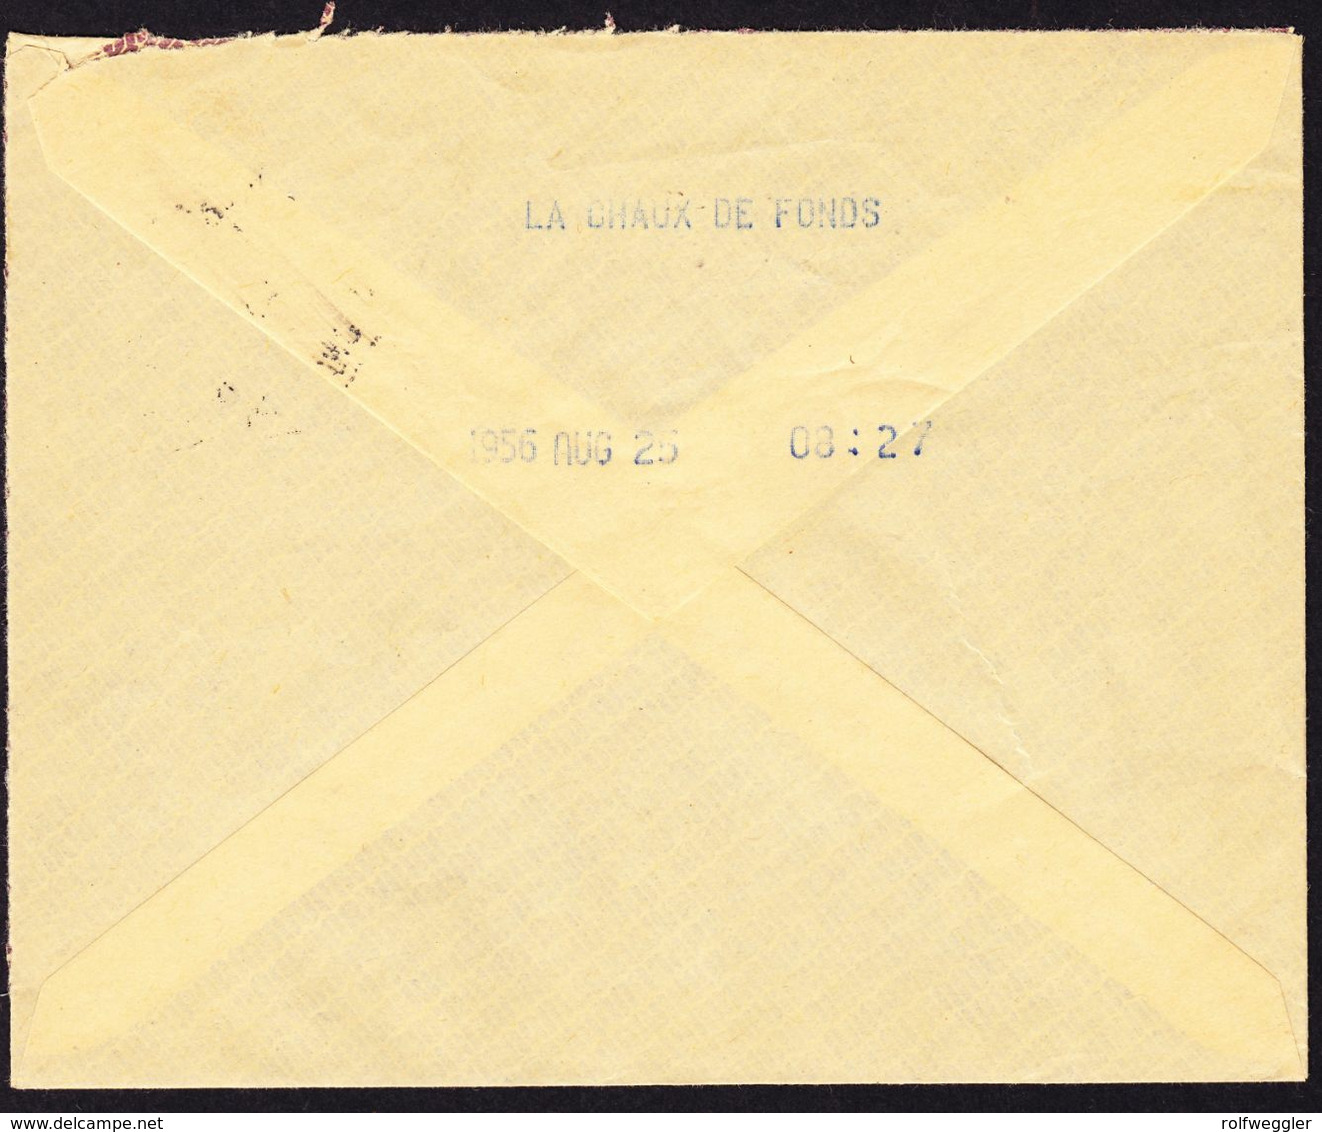 1956 Telegramm Couvert Rot Stempel La-Chaux-de-Fonds Mit Label "Brieftelegramm" - Télégraphe